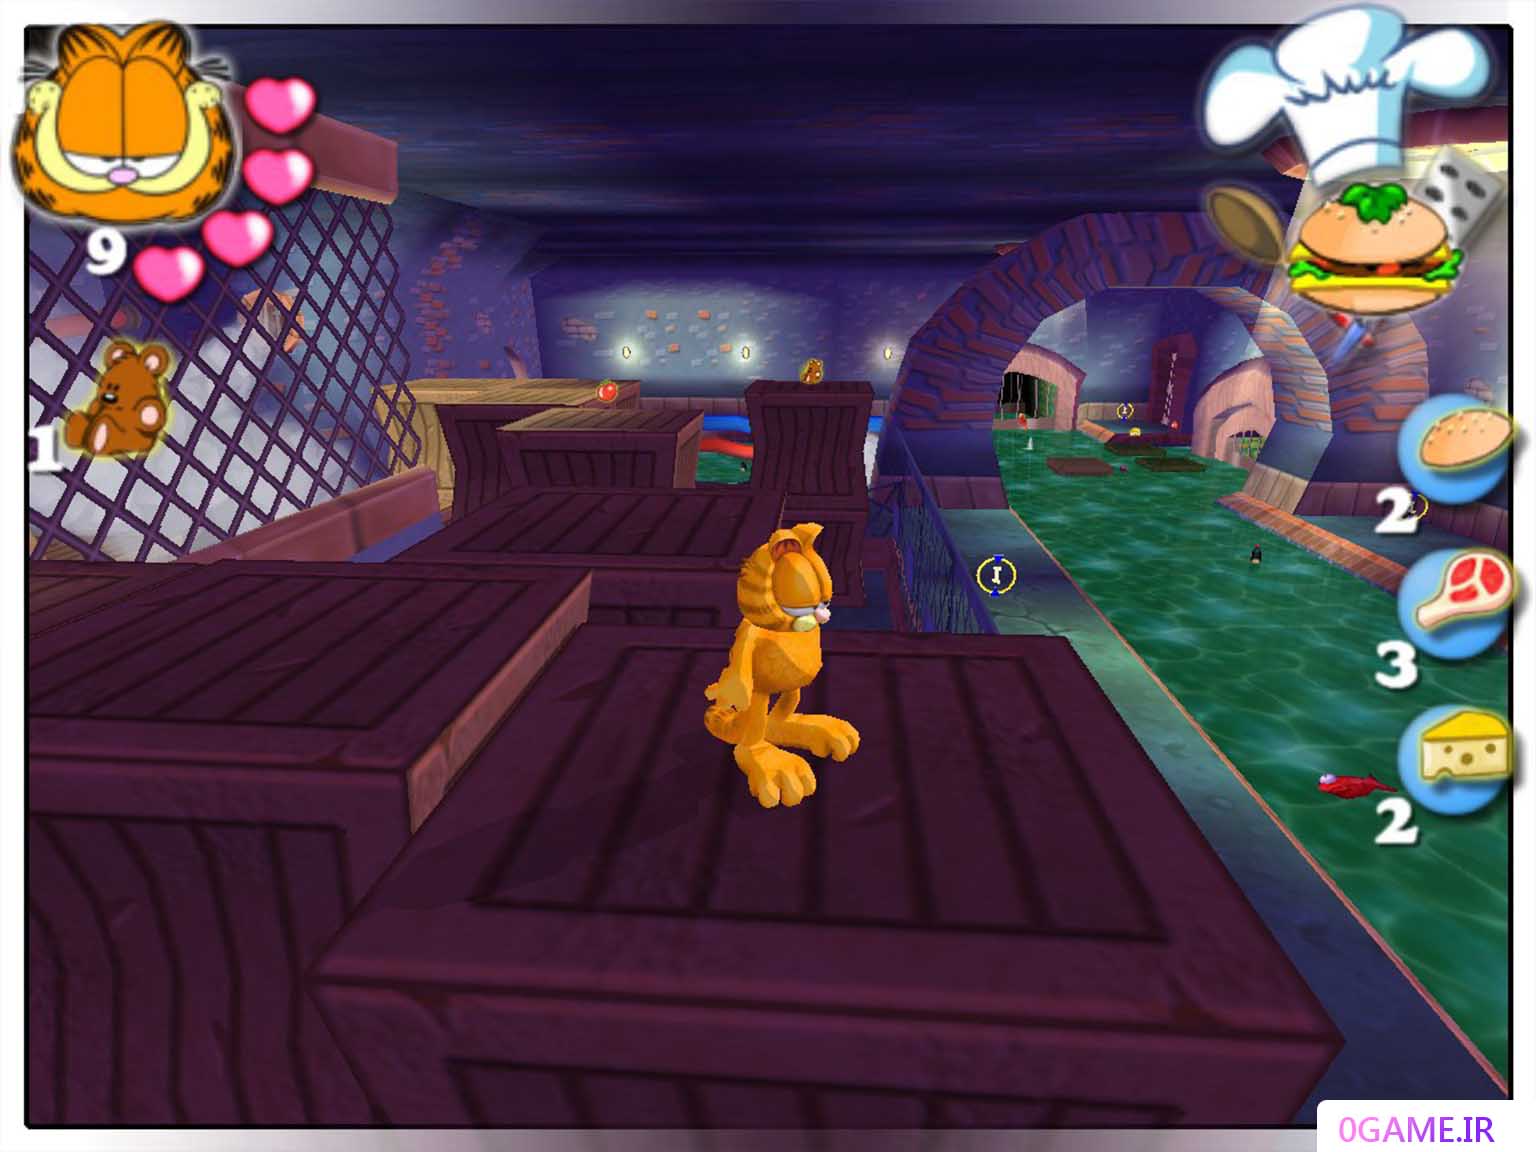 دانلود بازی گارفیلد  (Garfield Saving Arlene) نسخه کامل برای کامپیوتر